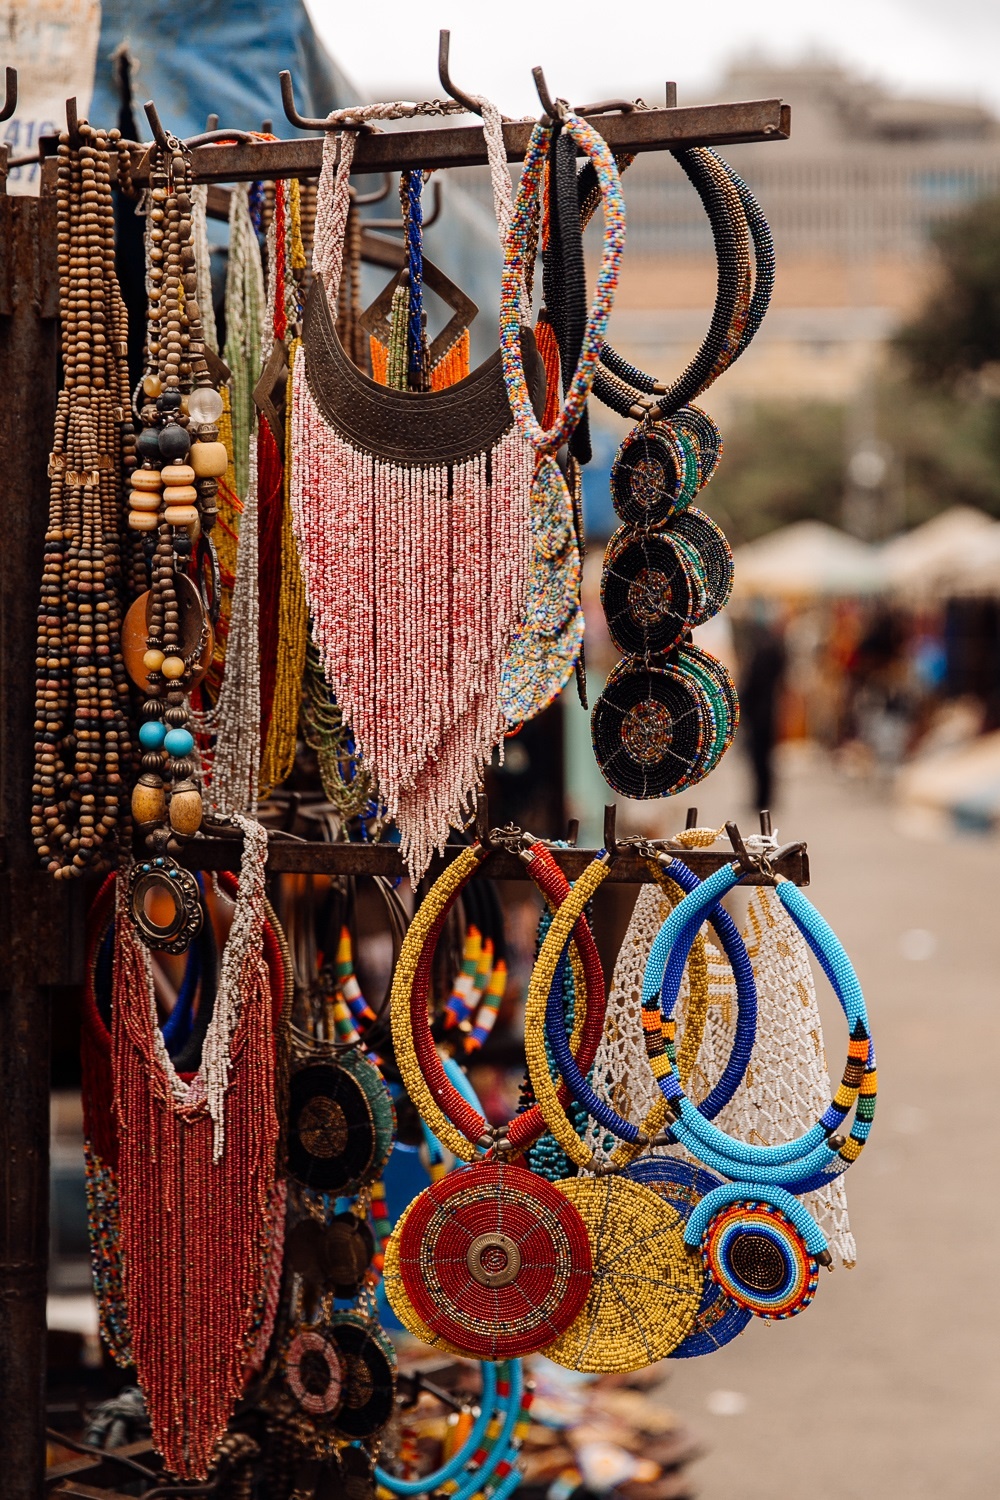 На рынке в Найроби можно приобрести интересные украшения